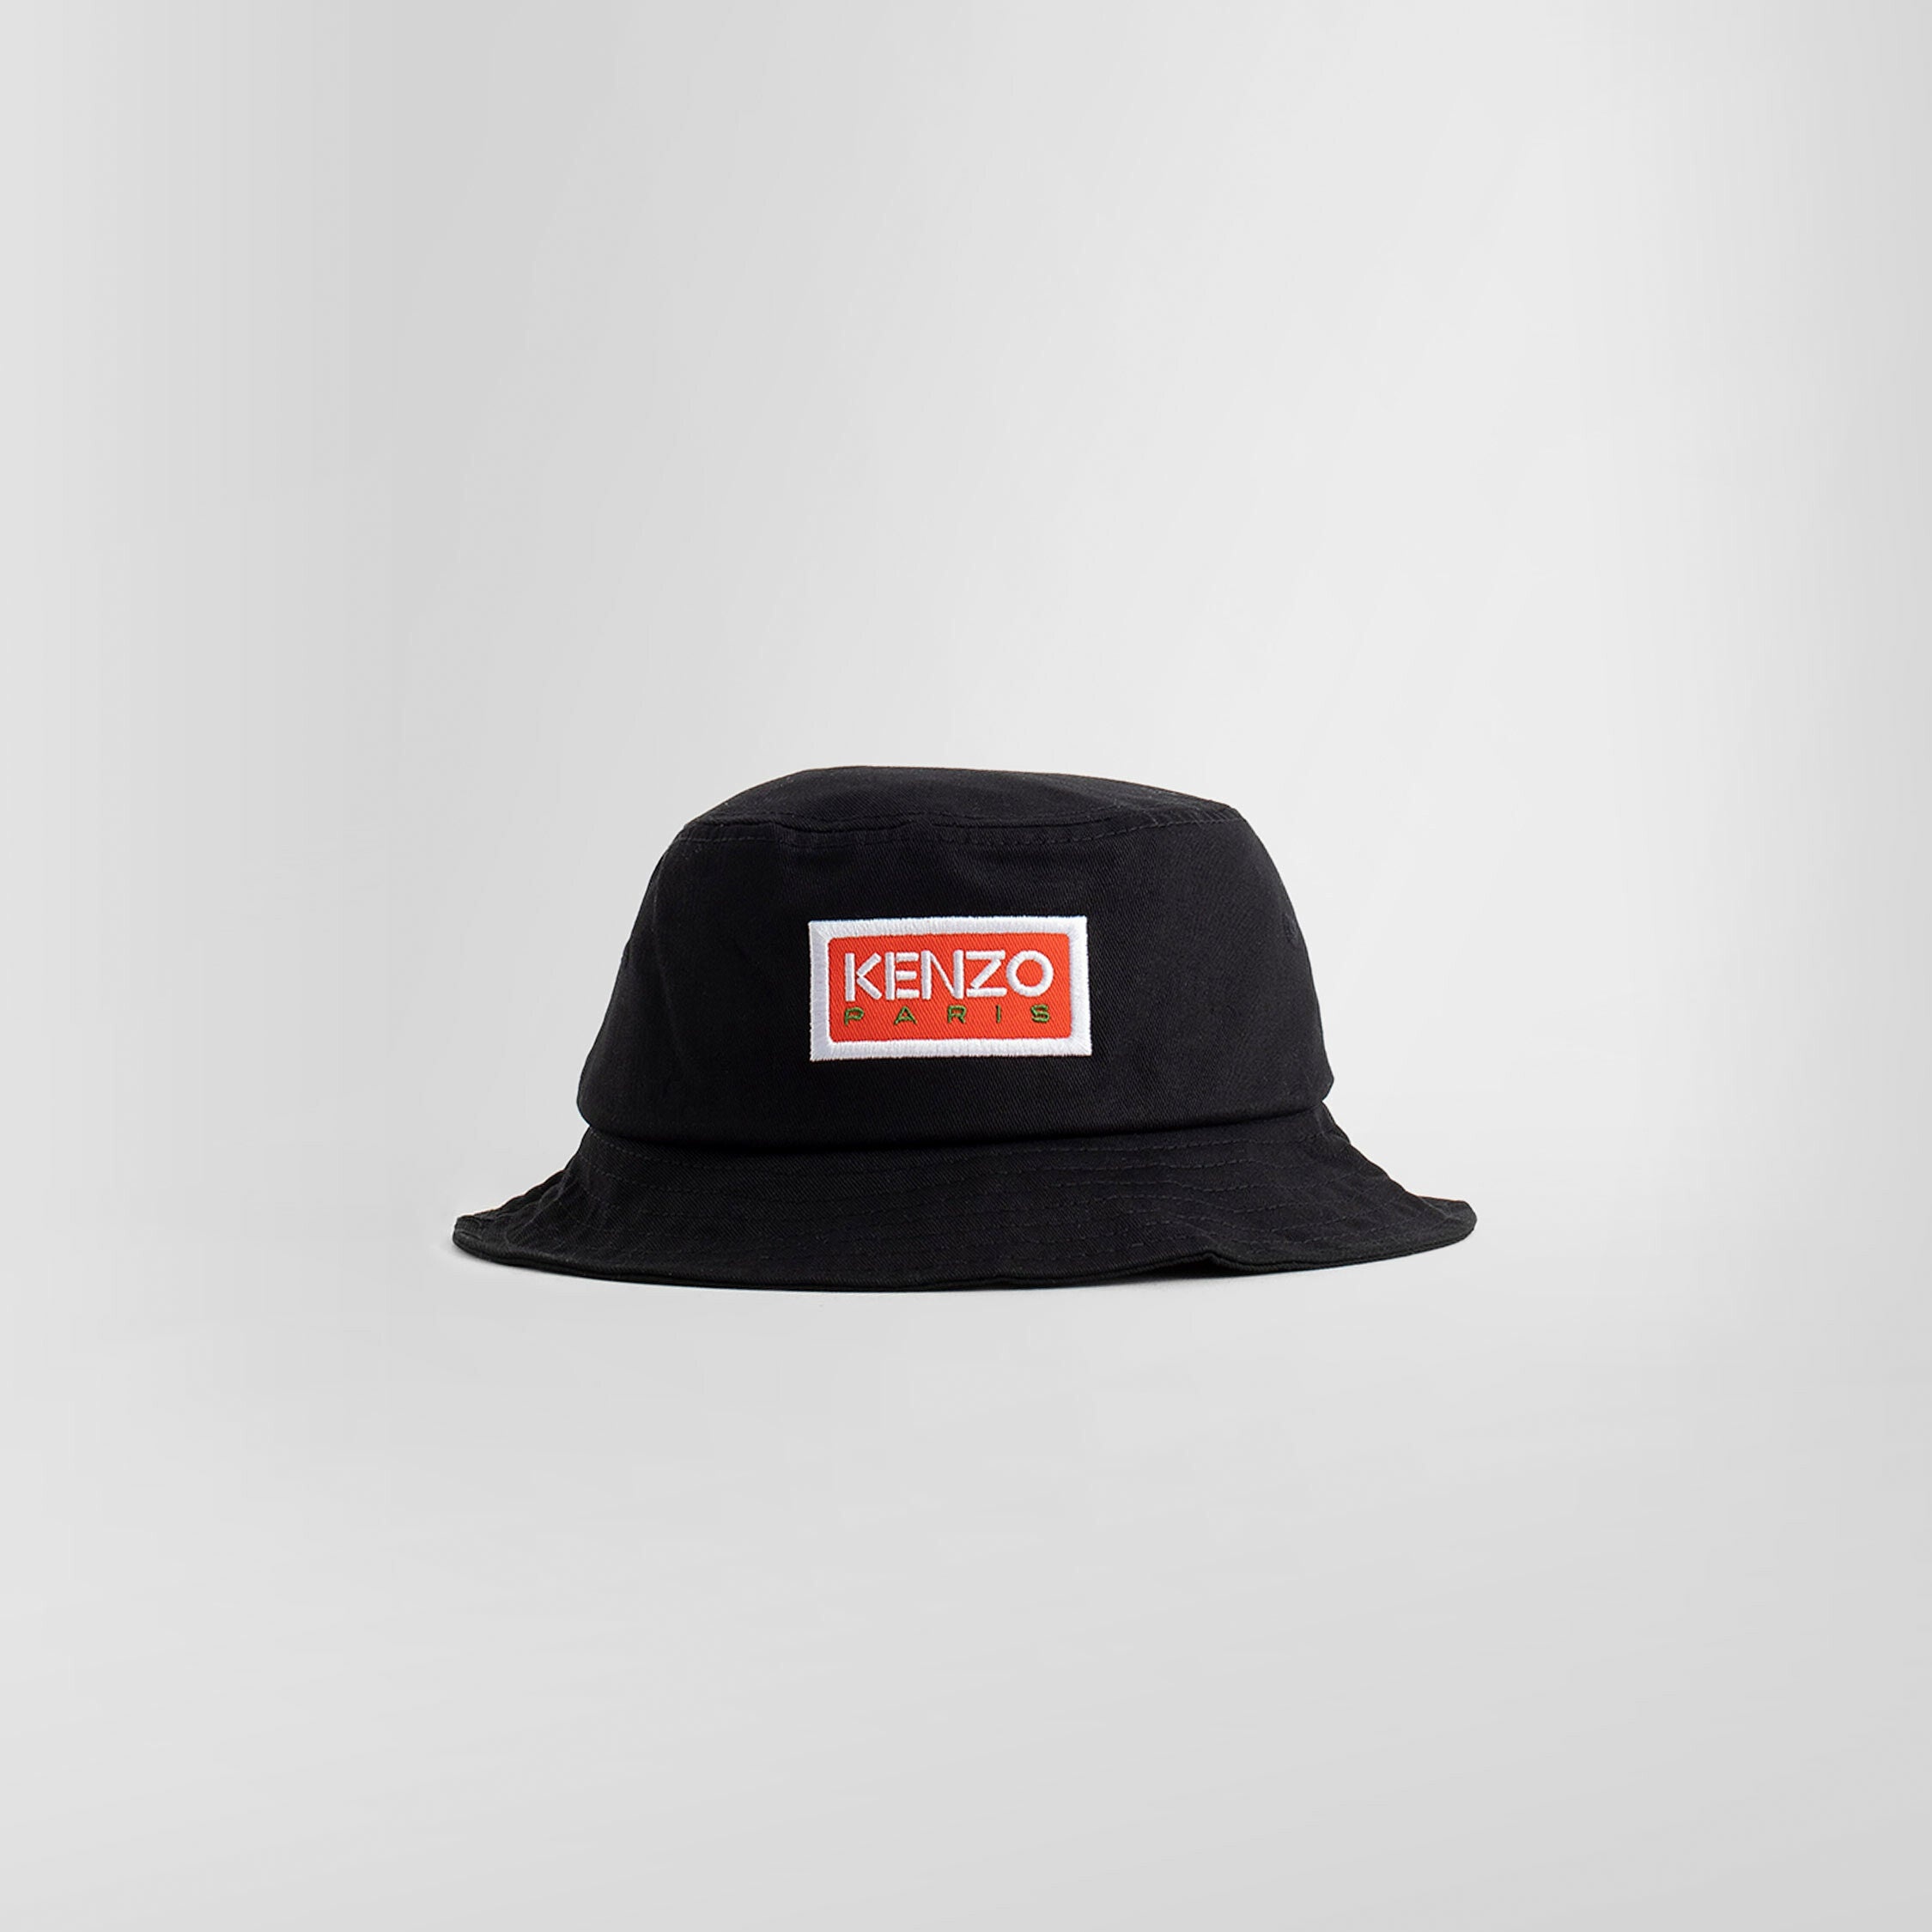 KENZO BY NIGO MAN BLACK HATS - 5